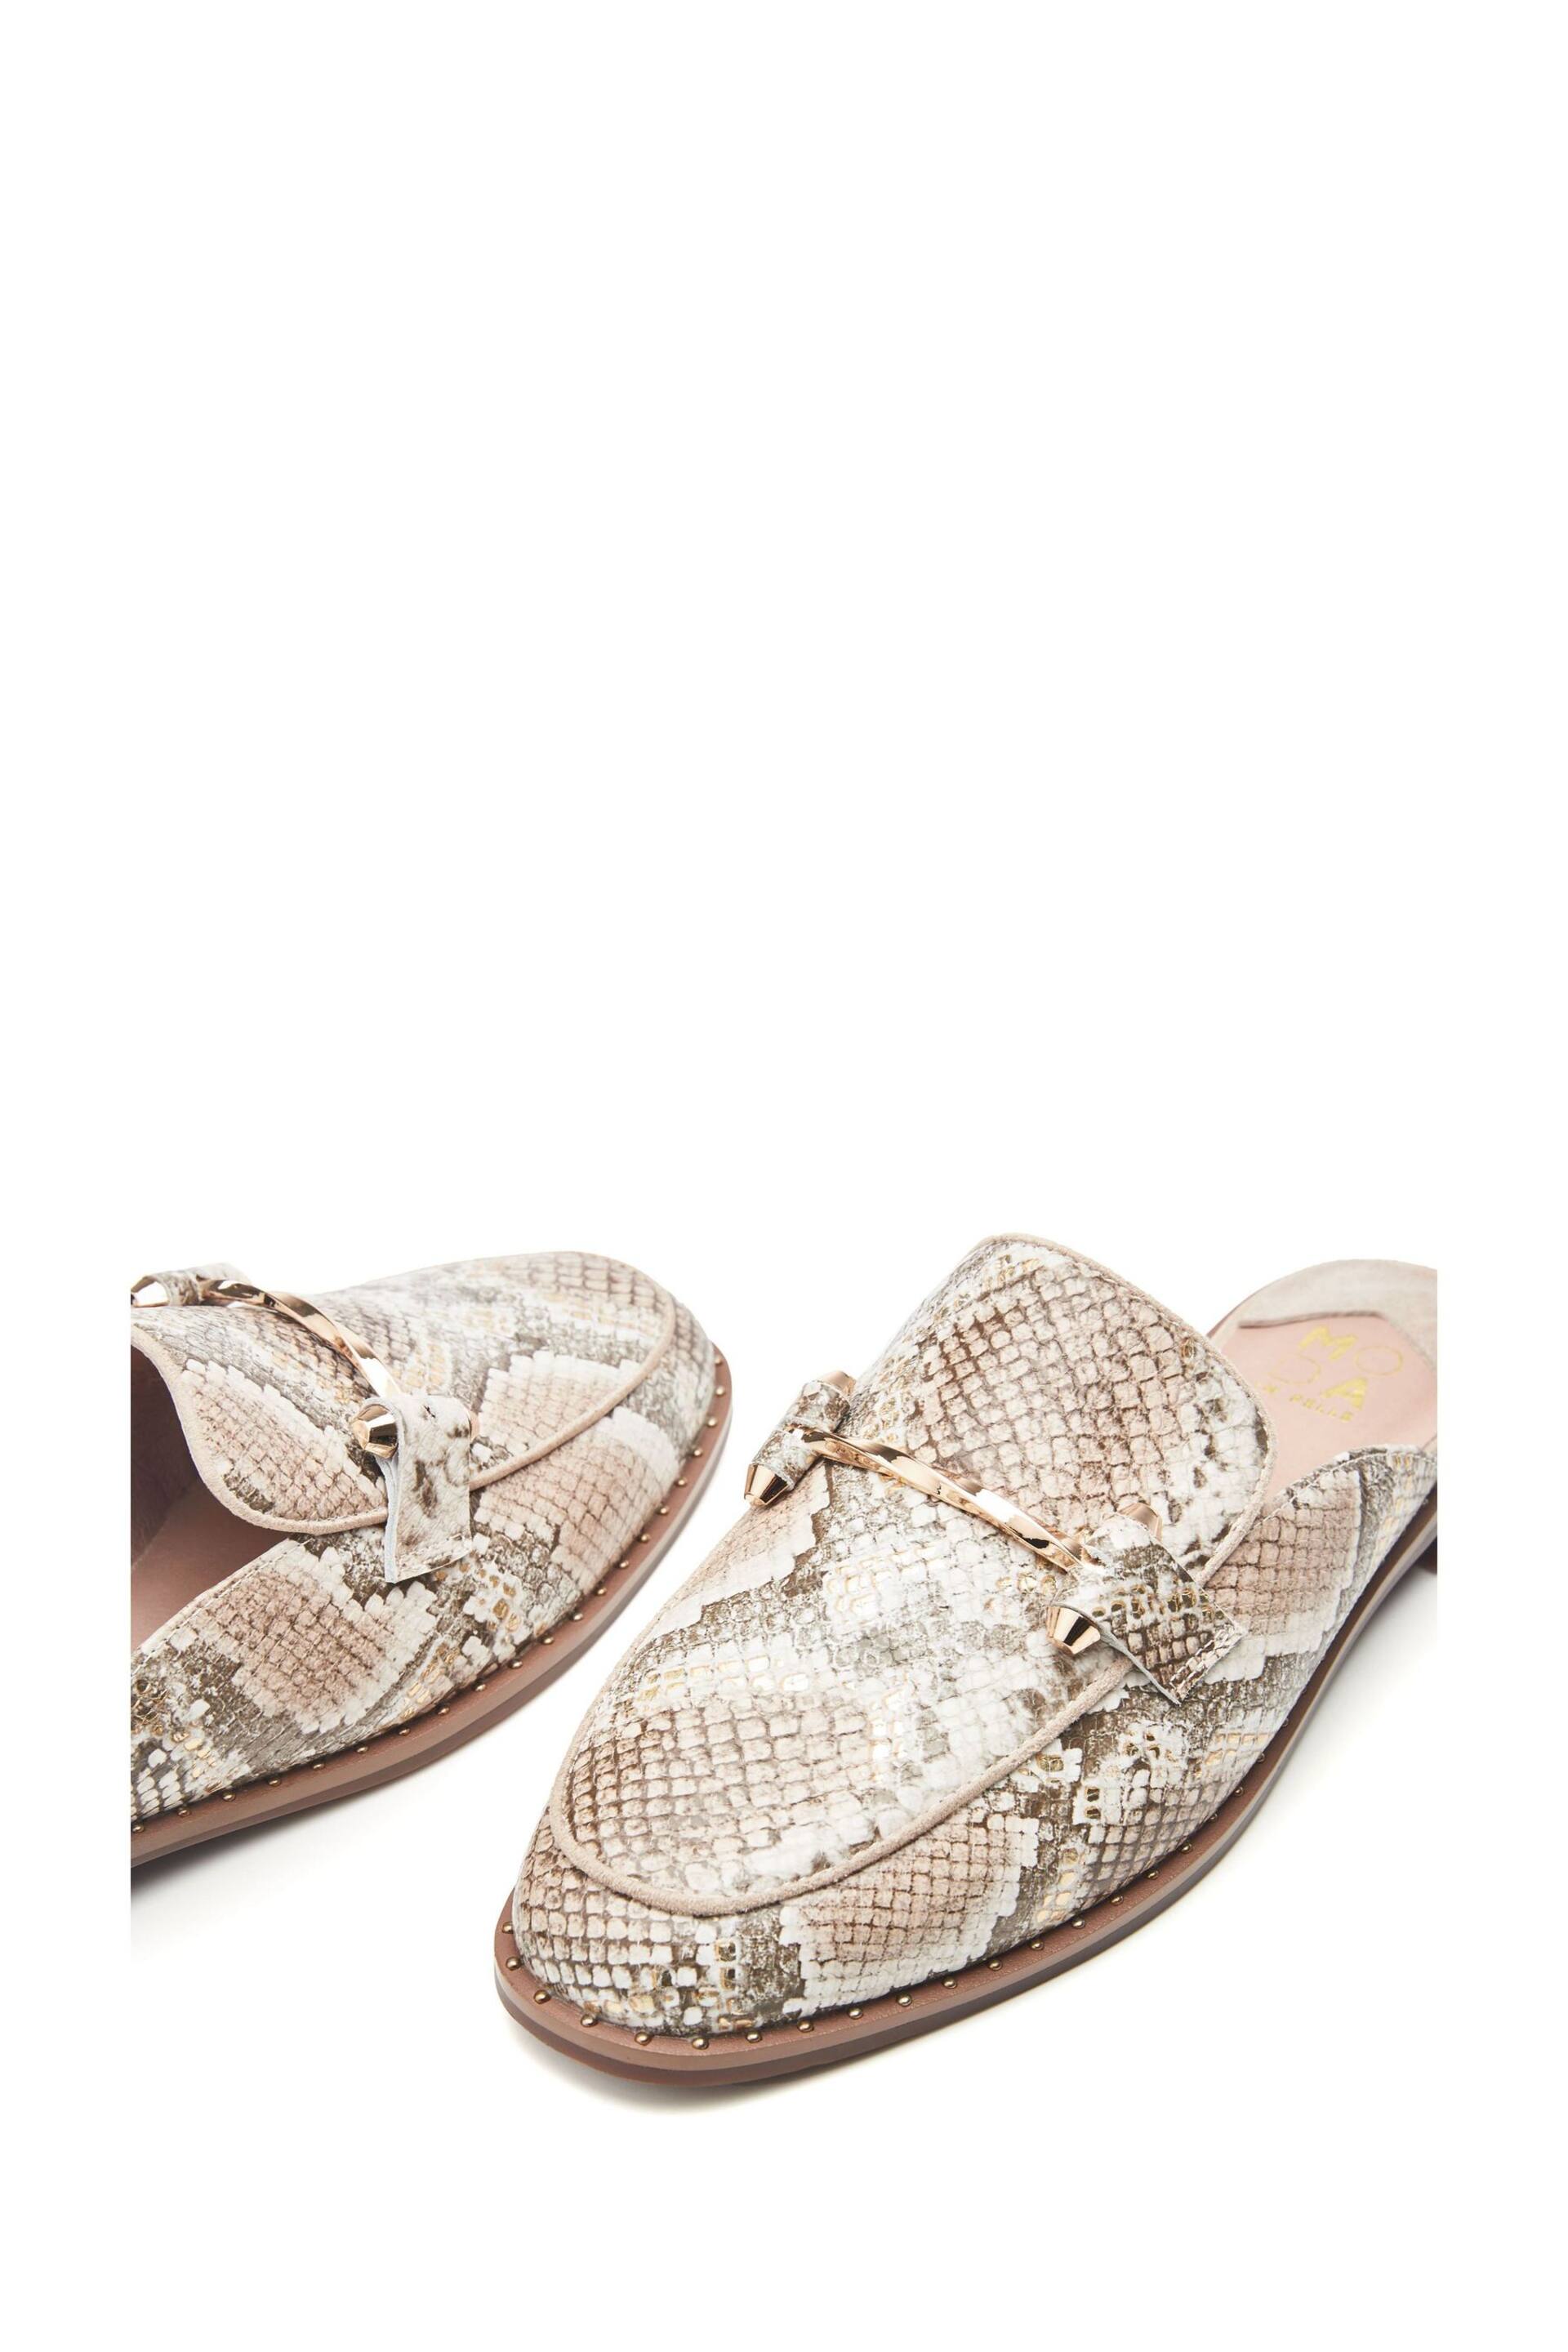 Moda in Pelle Ellajean Mule Slip-On Shoes With Trim - Image 4 of 4